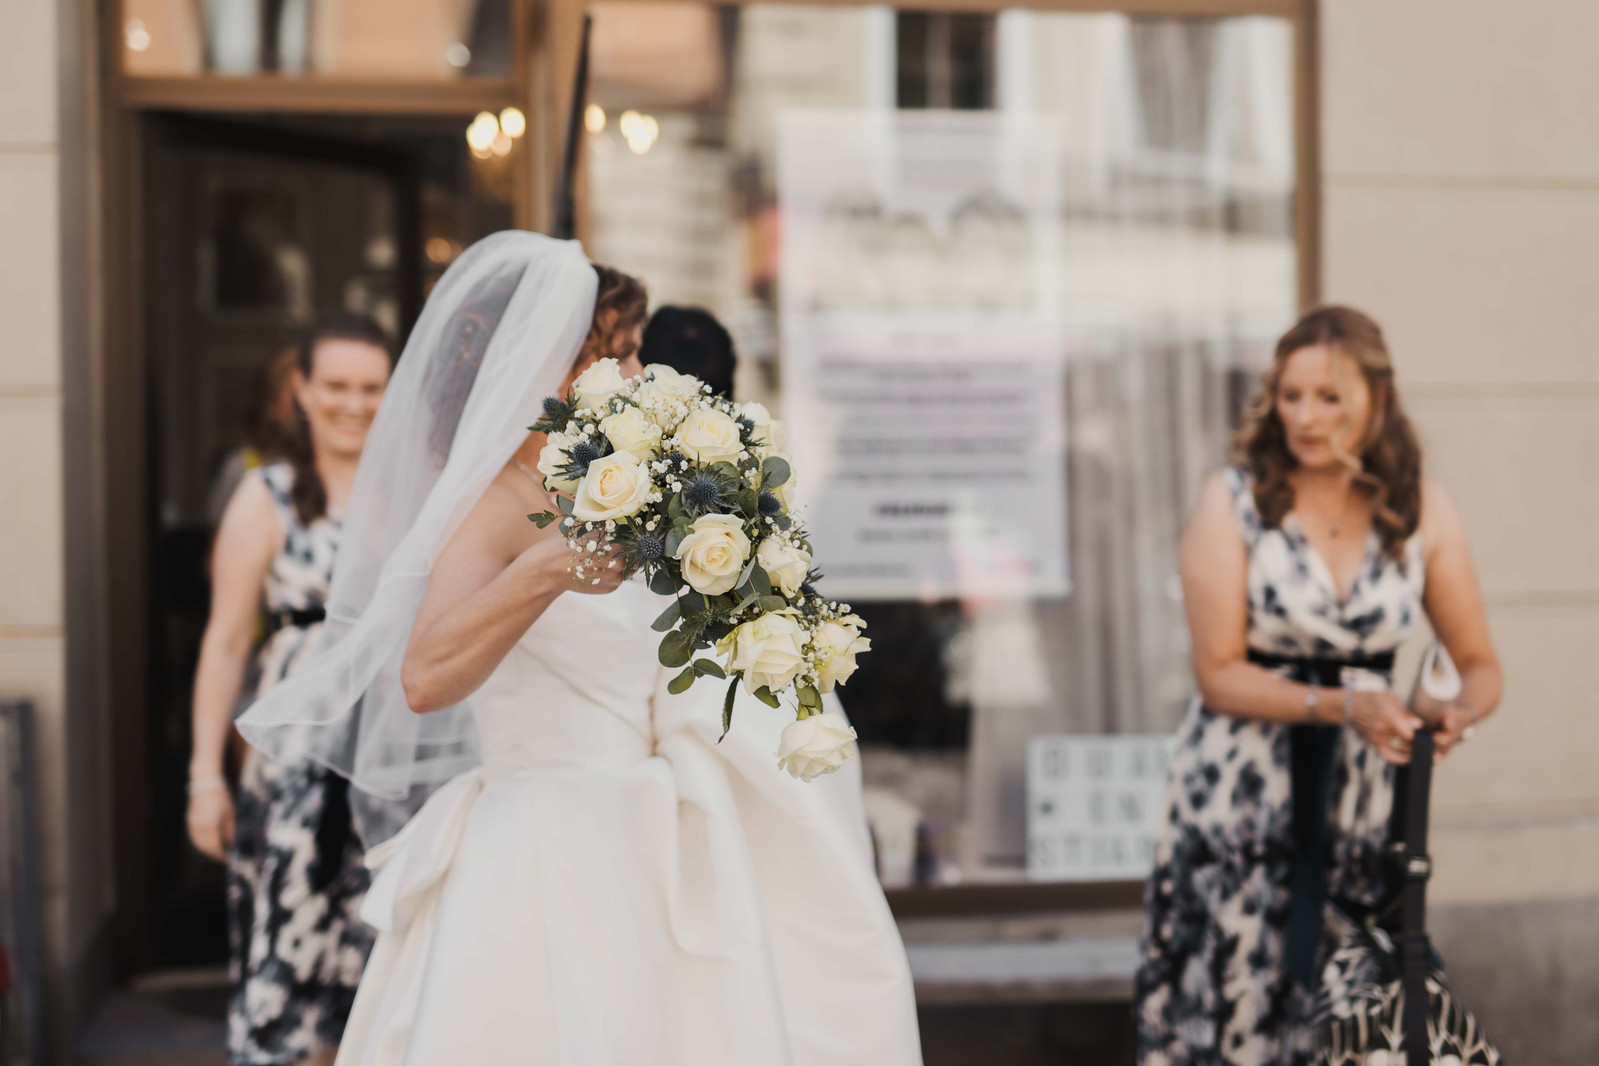 Kvinna i vit brudklänning och vit slöja håller upp sin brudbukett med gula rosor och tistlar utanför en salong med skyltfönster i stan medan hennes tärnor i blåvita klänningar hjälper henne med klänningen.